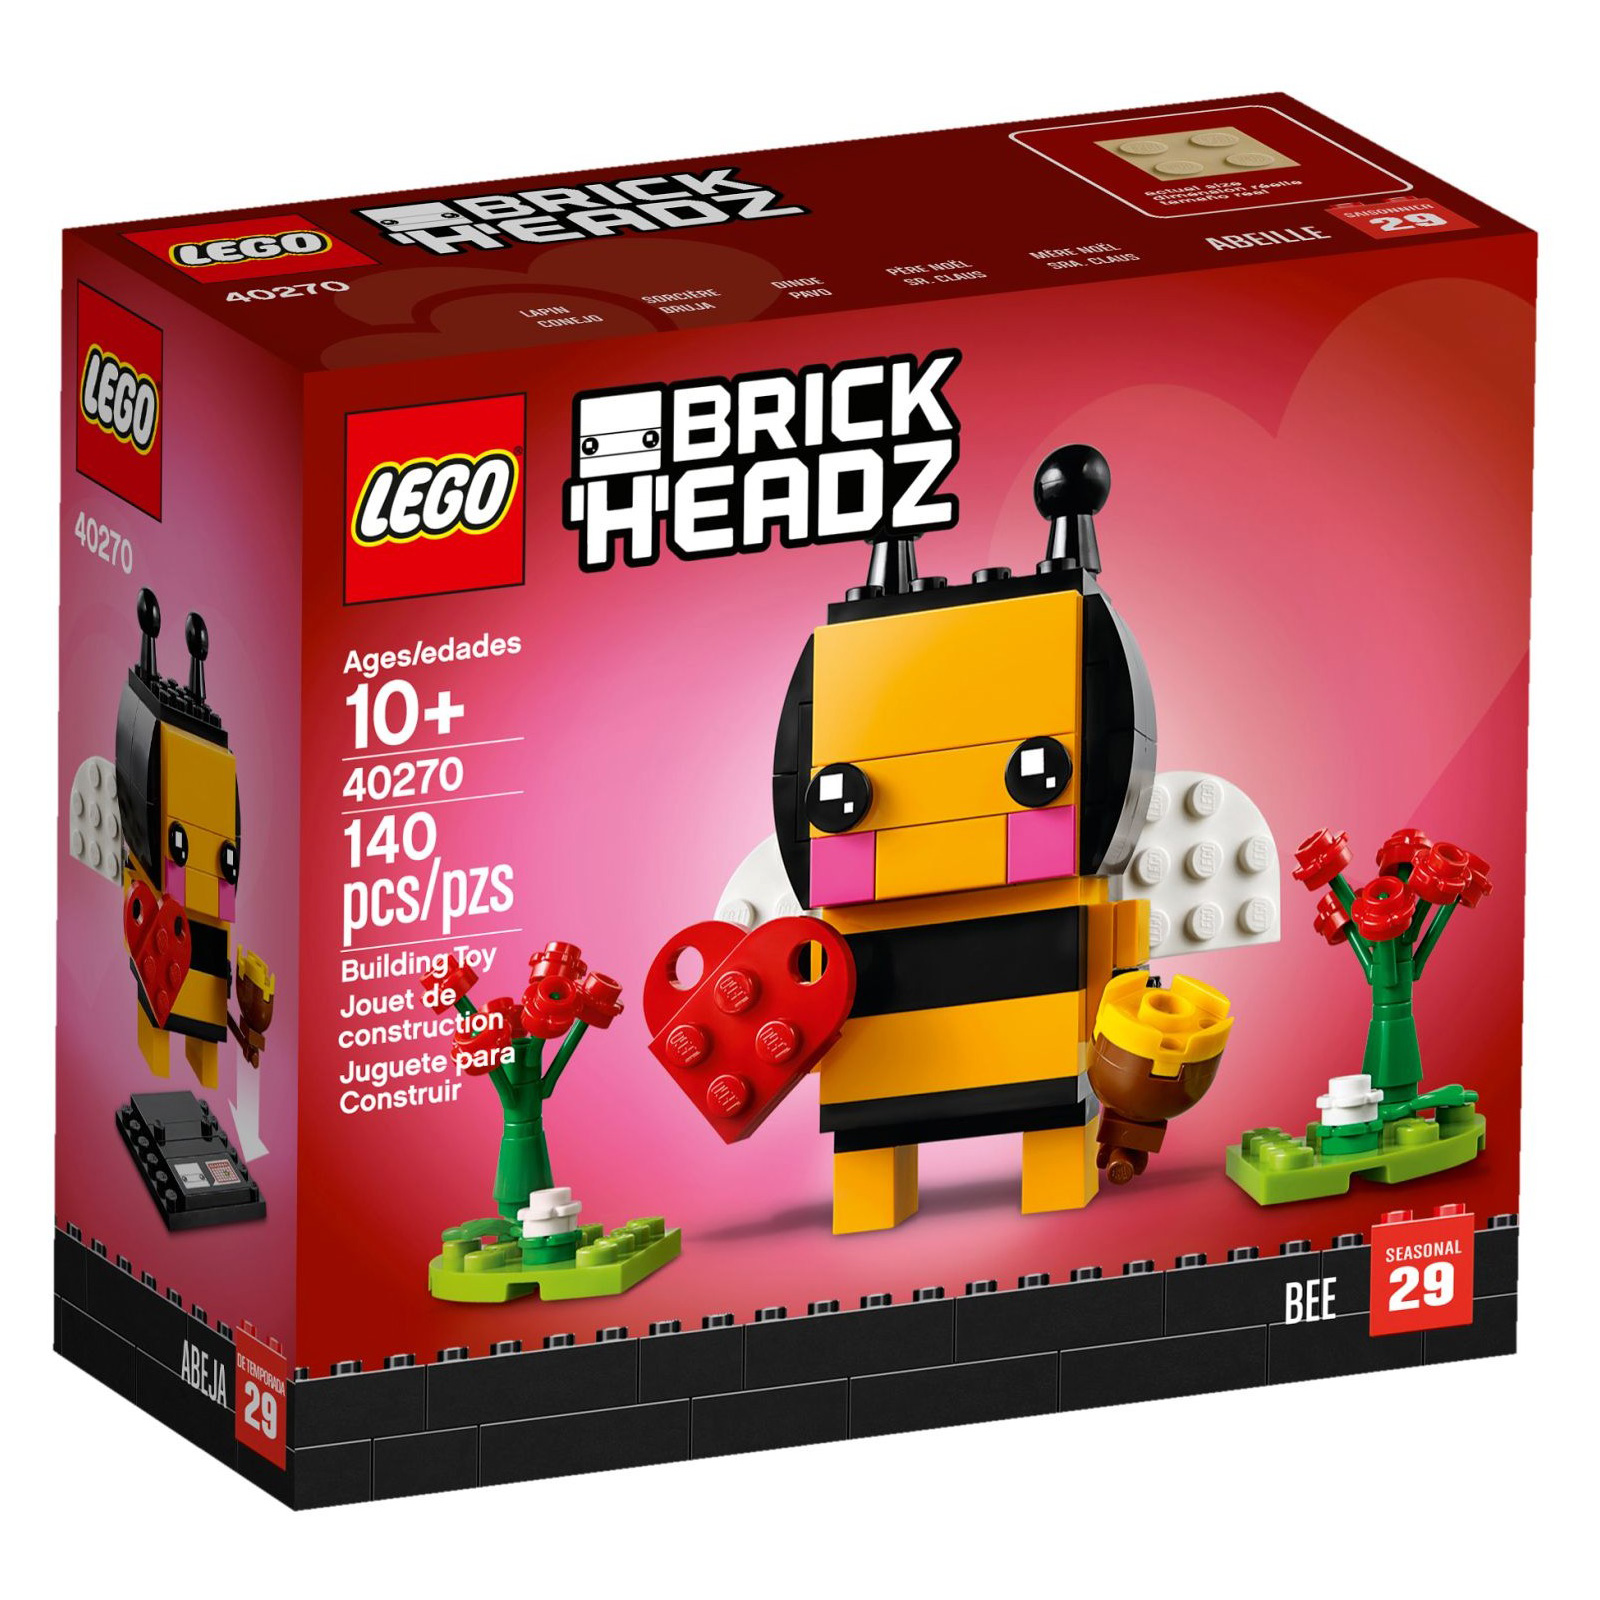 LEGO® BrickHeadz 40270 Valentinstags-Biene günstig kaufen | brickstore.at